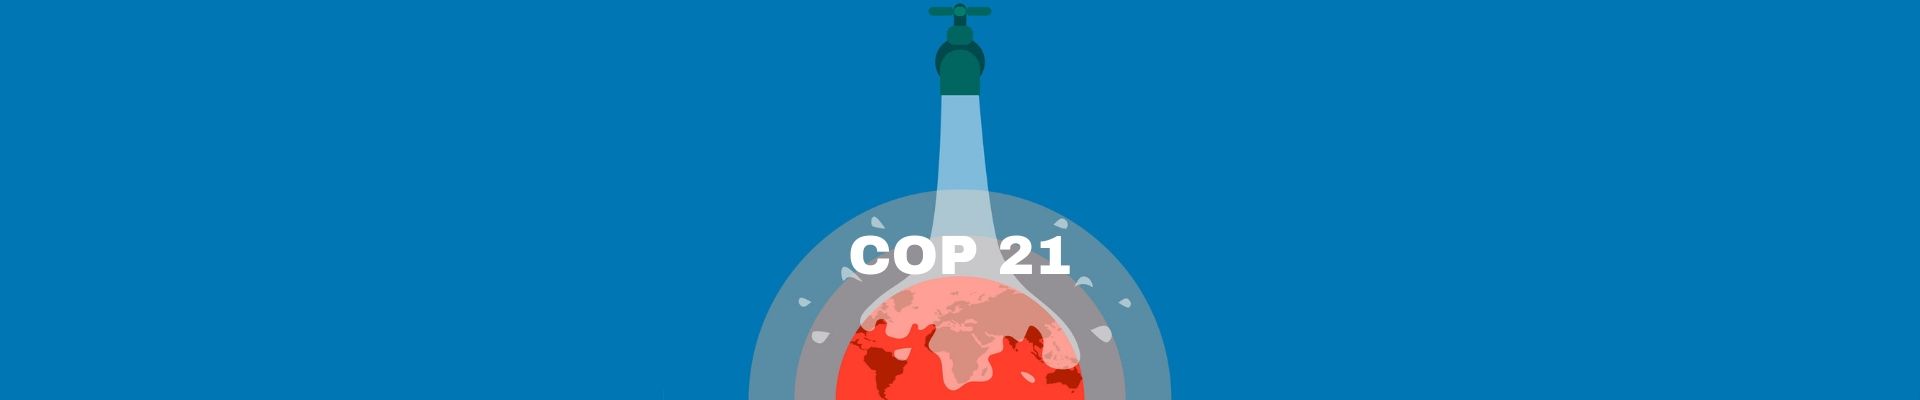 La COP 21, une conférence historique